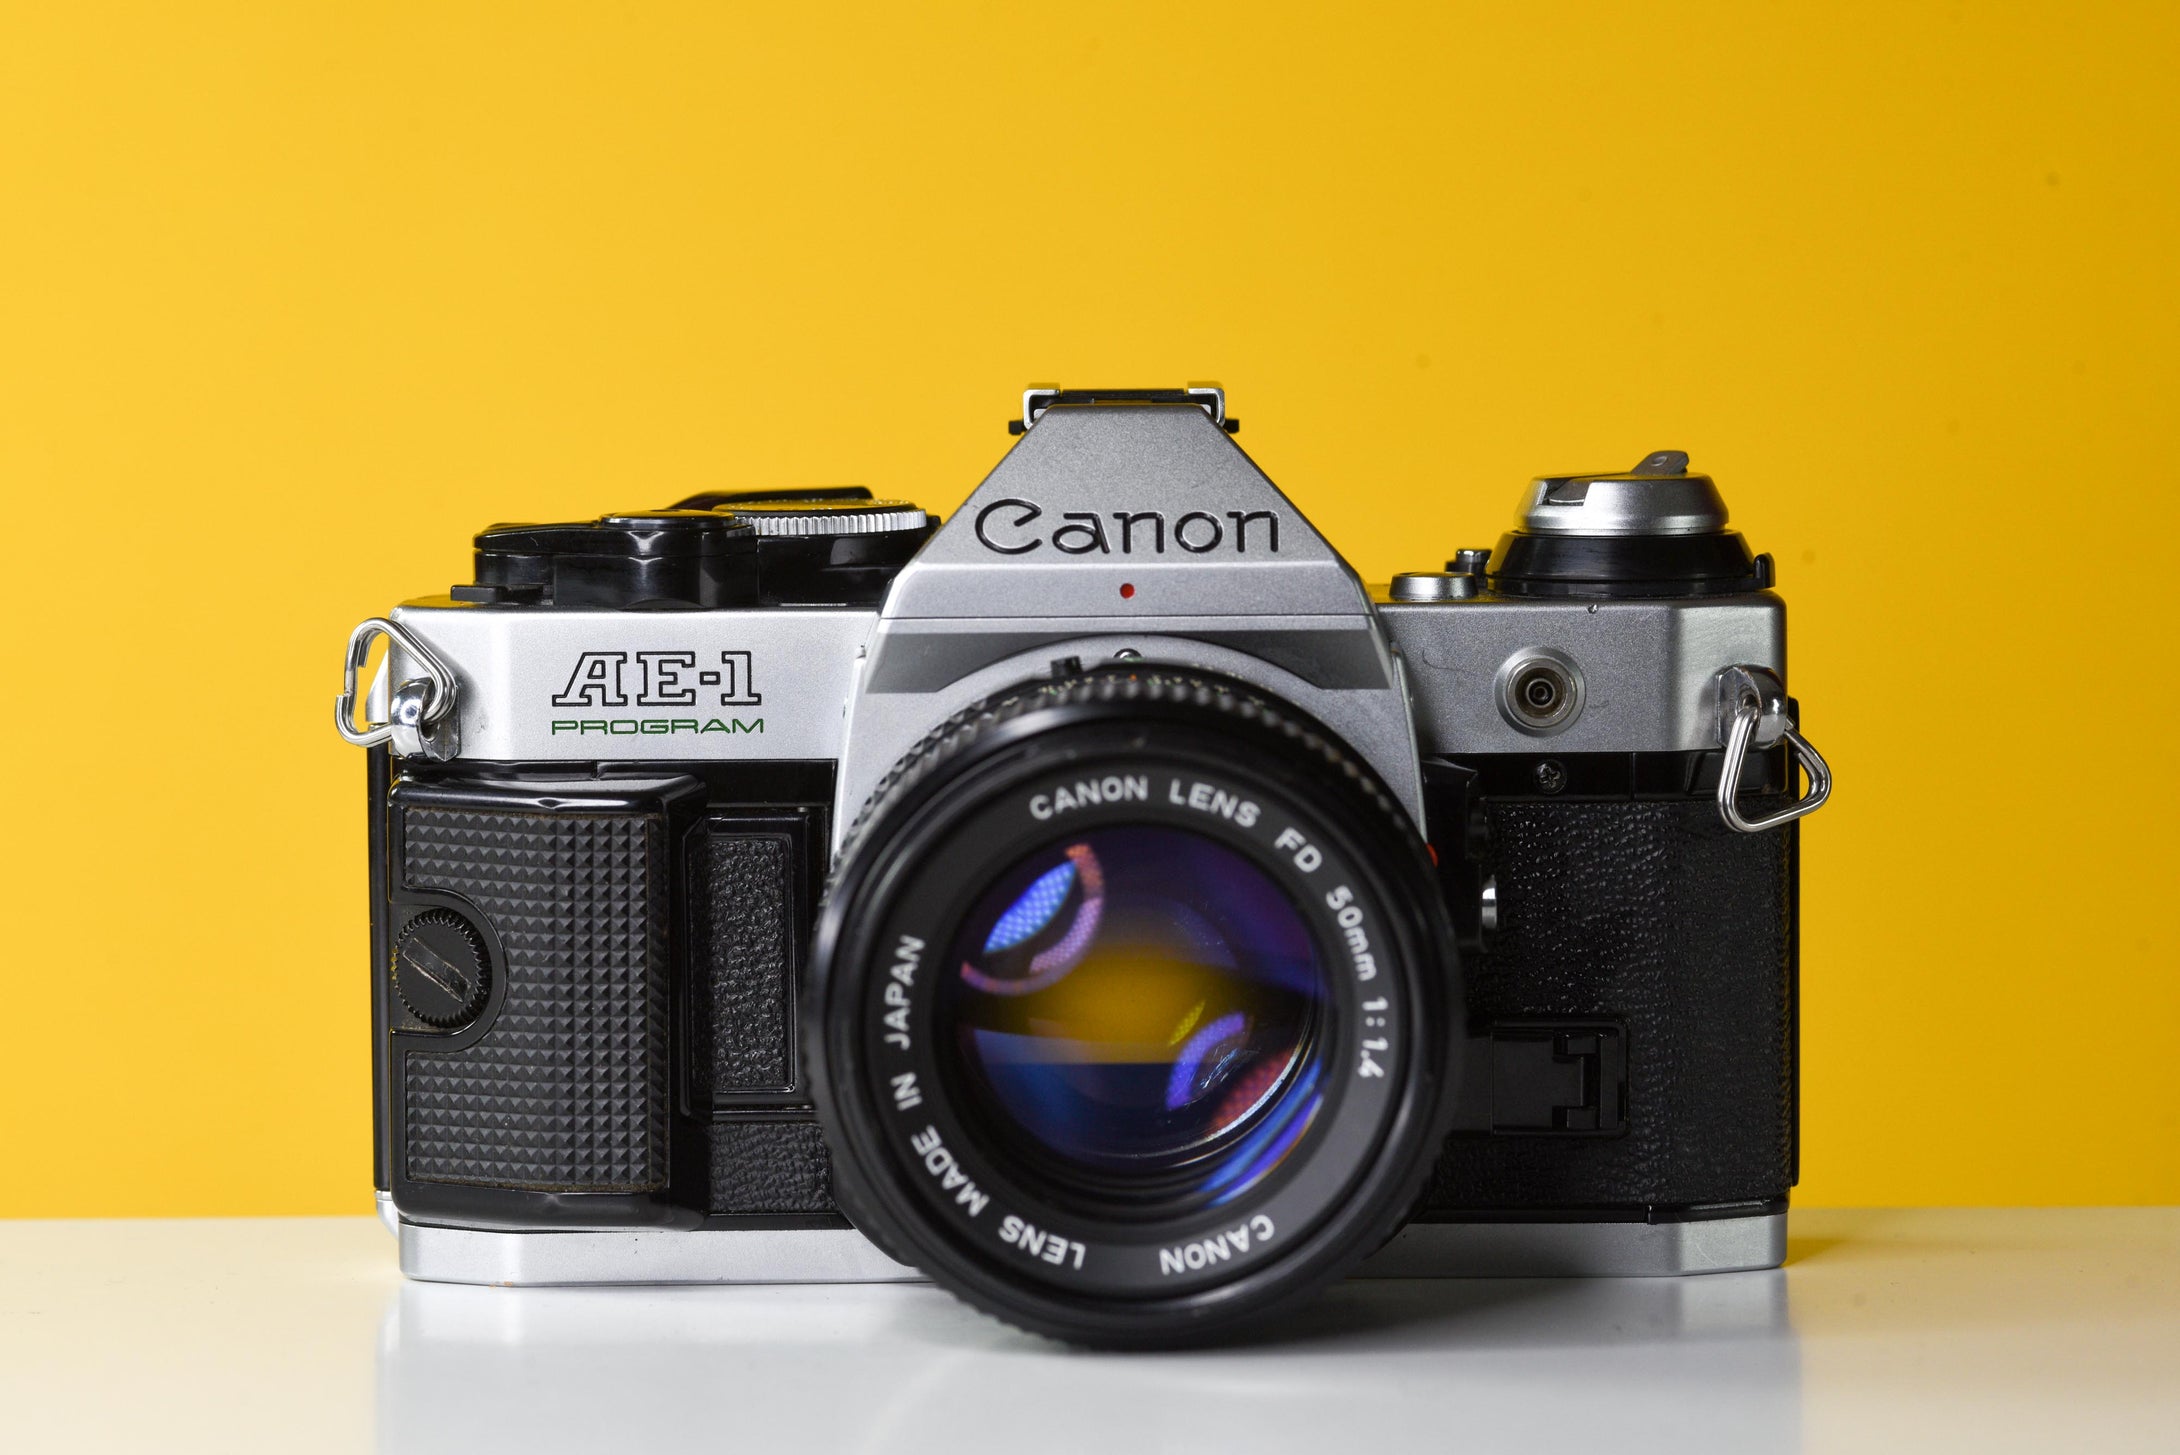 Canon AE-1 Program Silver 35mm Film Camera with Canon FD 50mm f